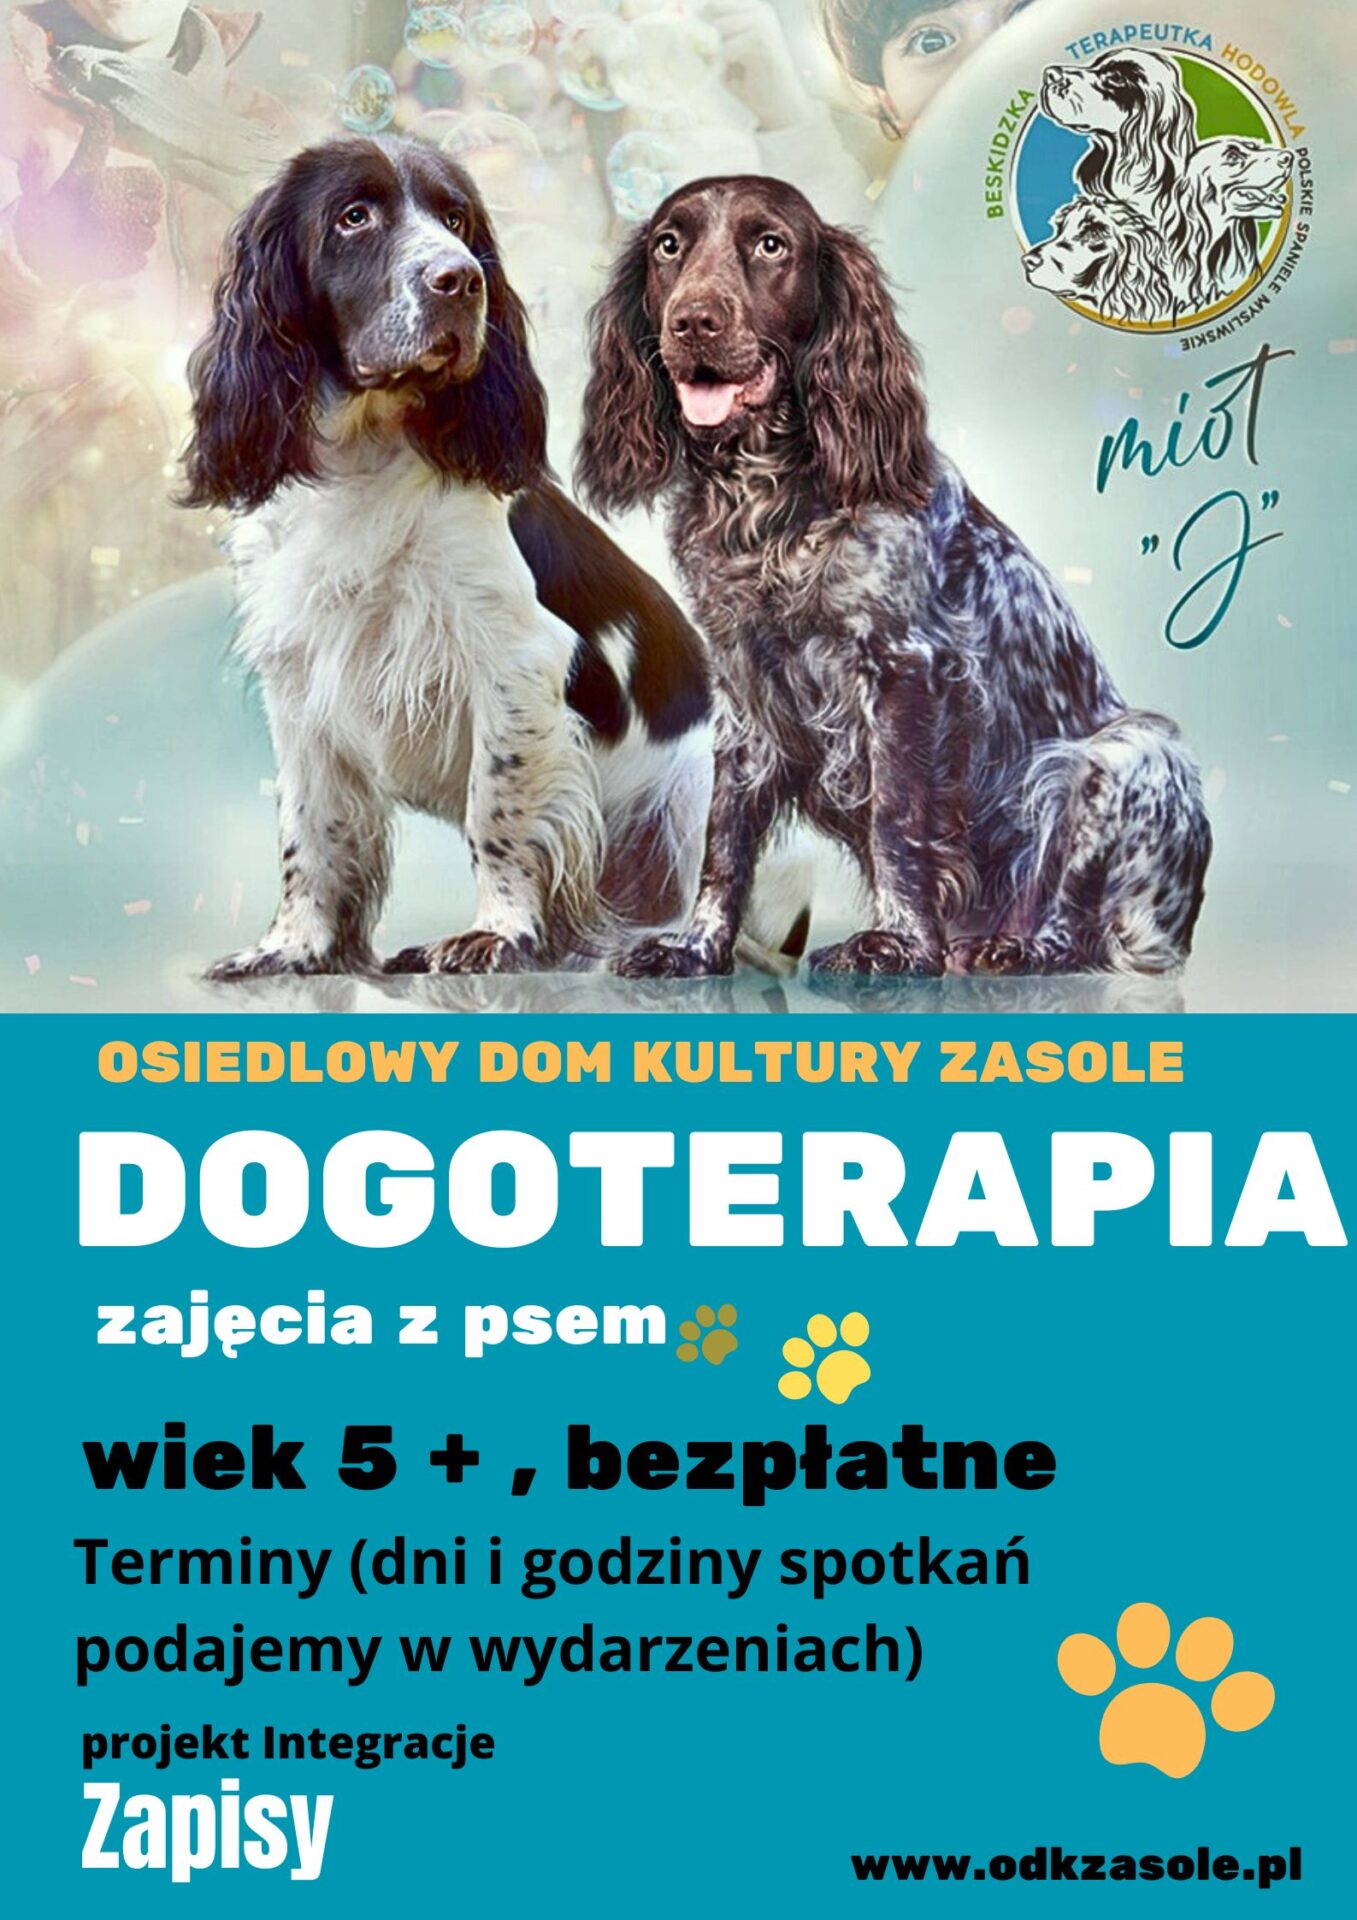 Na plakacie dwa psy i informacje o Dogoterapii